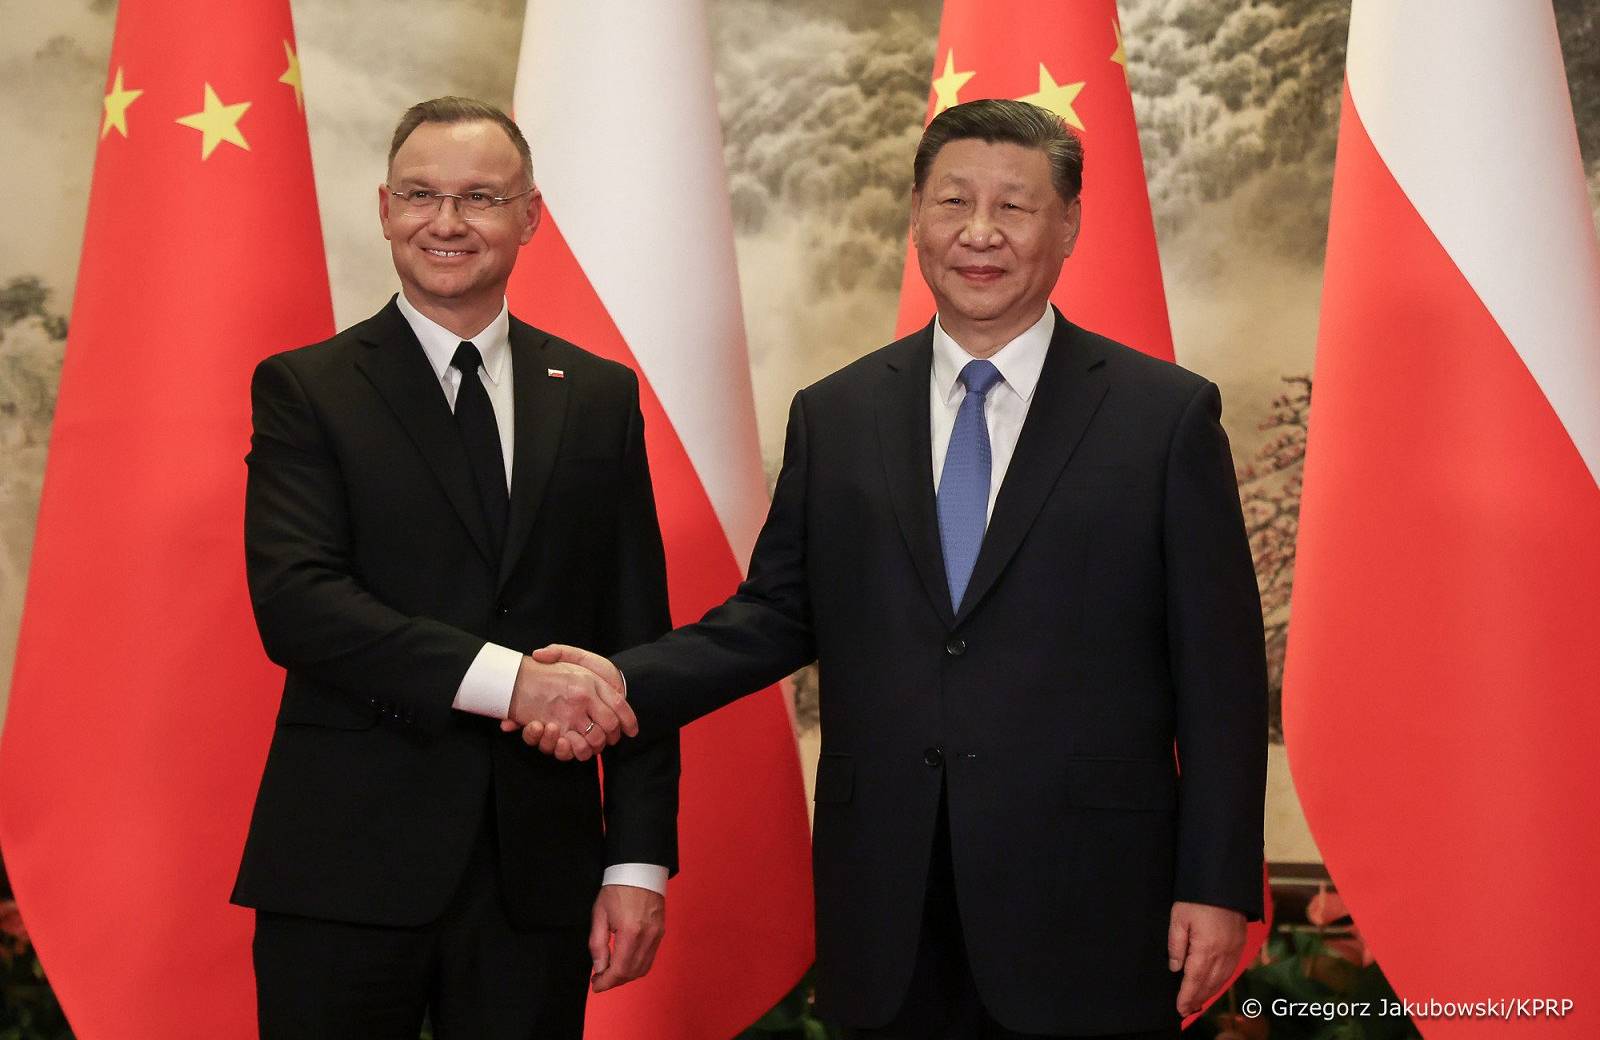 dwaj mężczyźni w garniturach (Duda i Xi) ściskają sobie ręce, w tle flagi